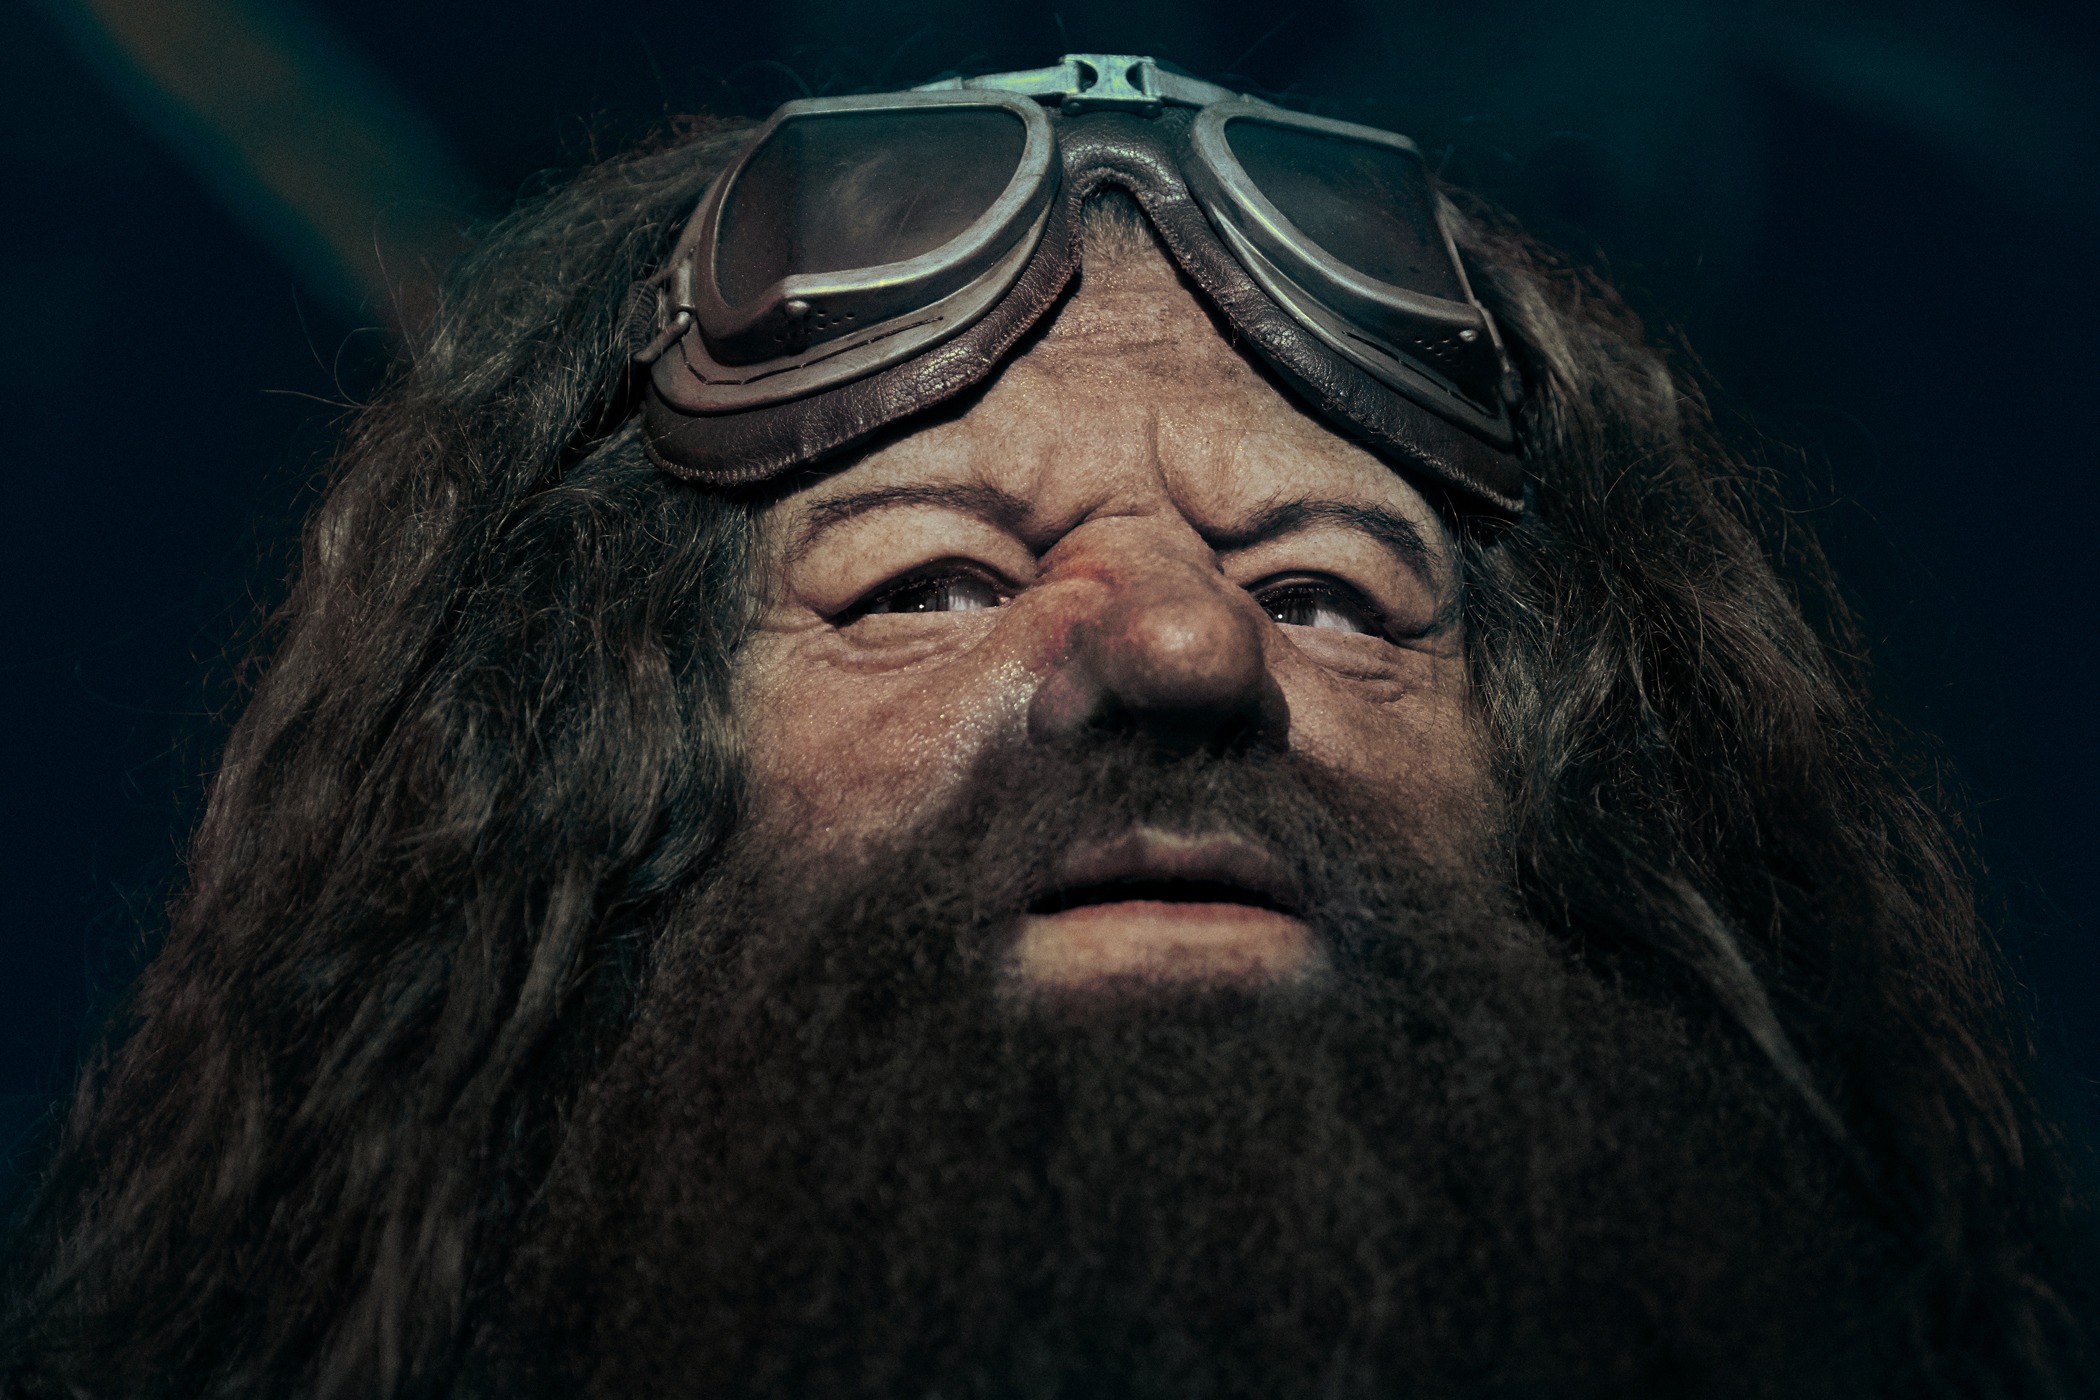 03_Hagrid’s Animated Figure Reveal